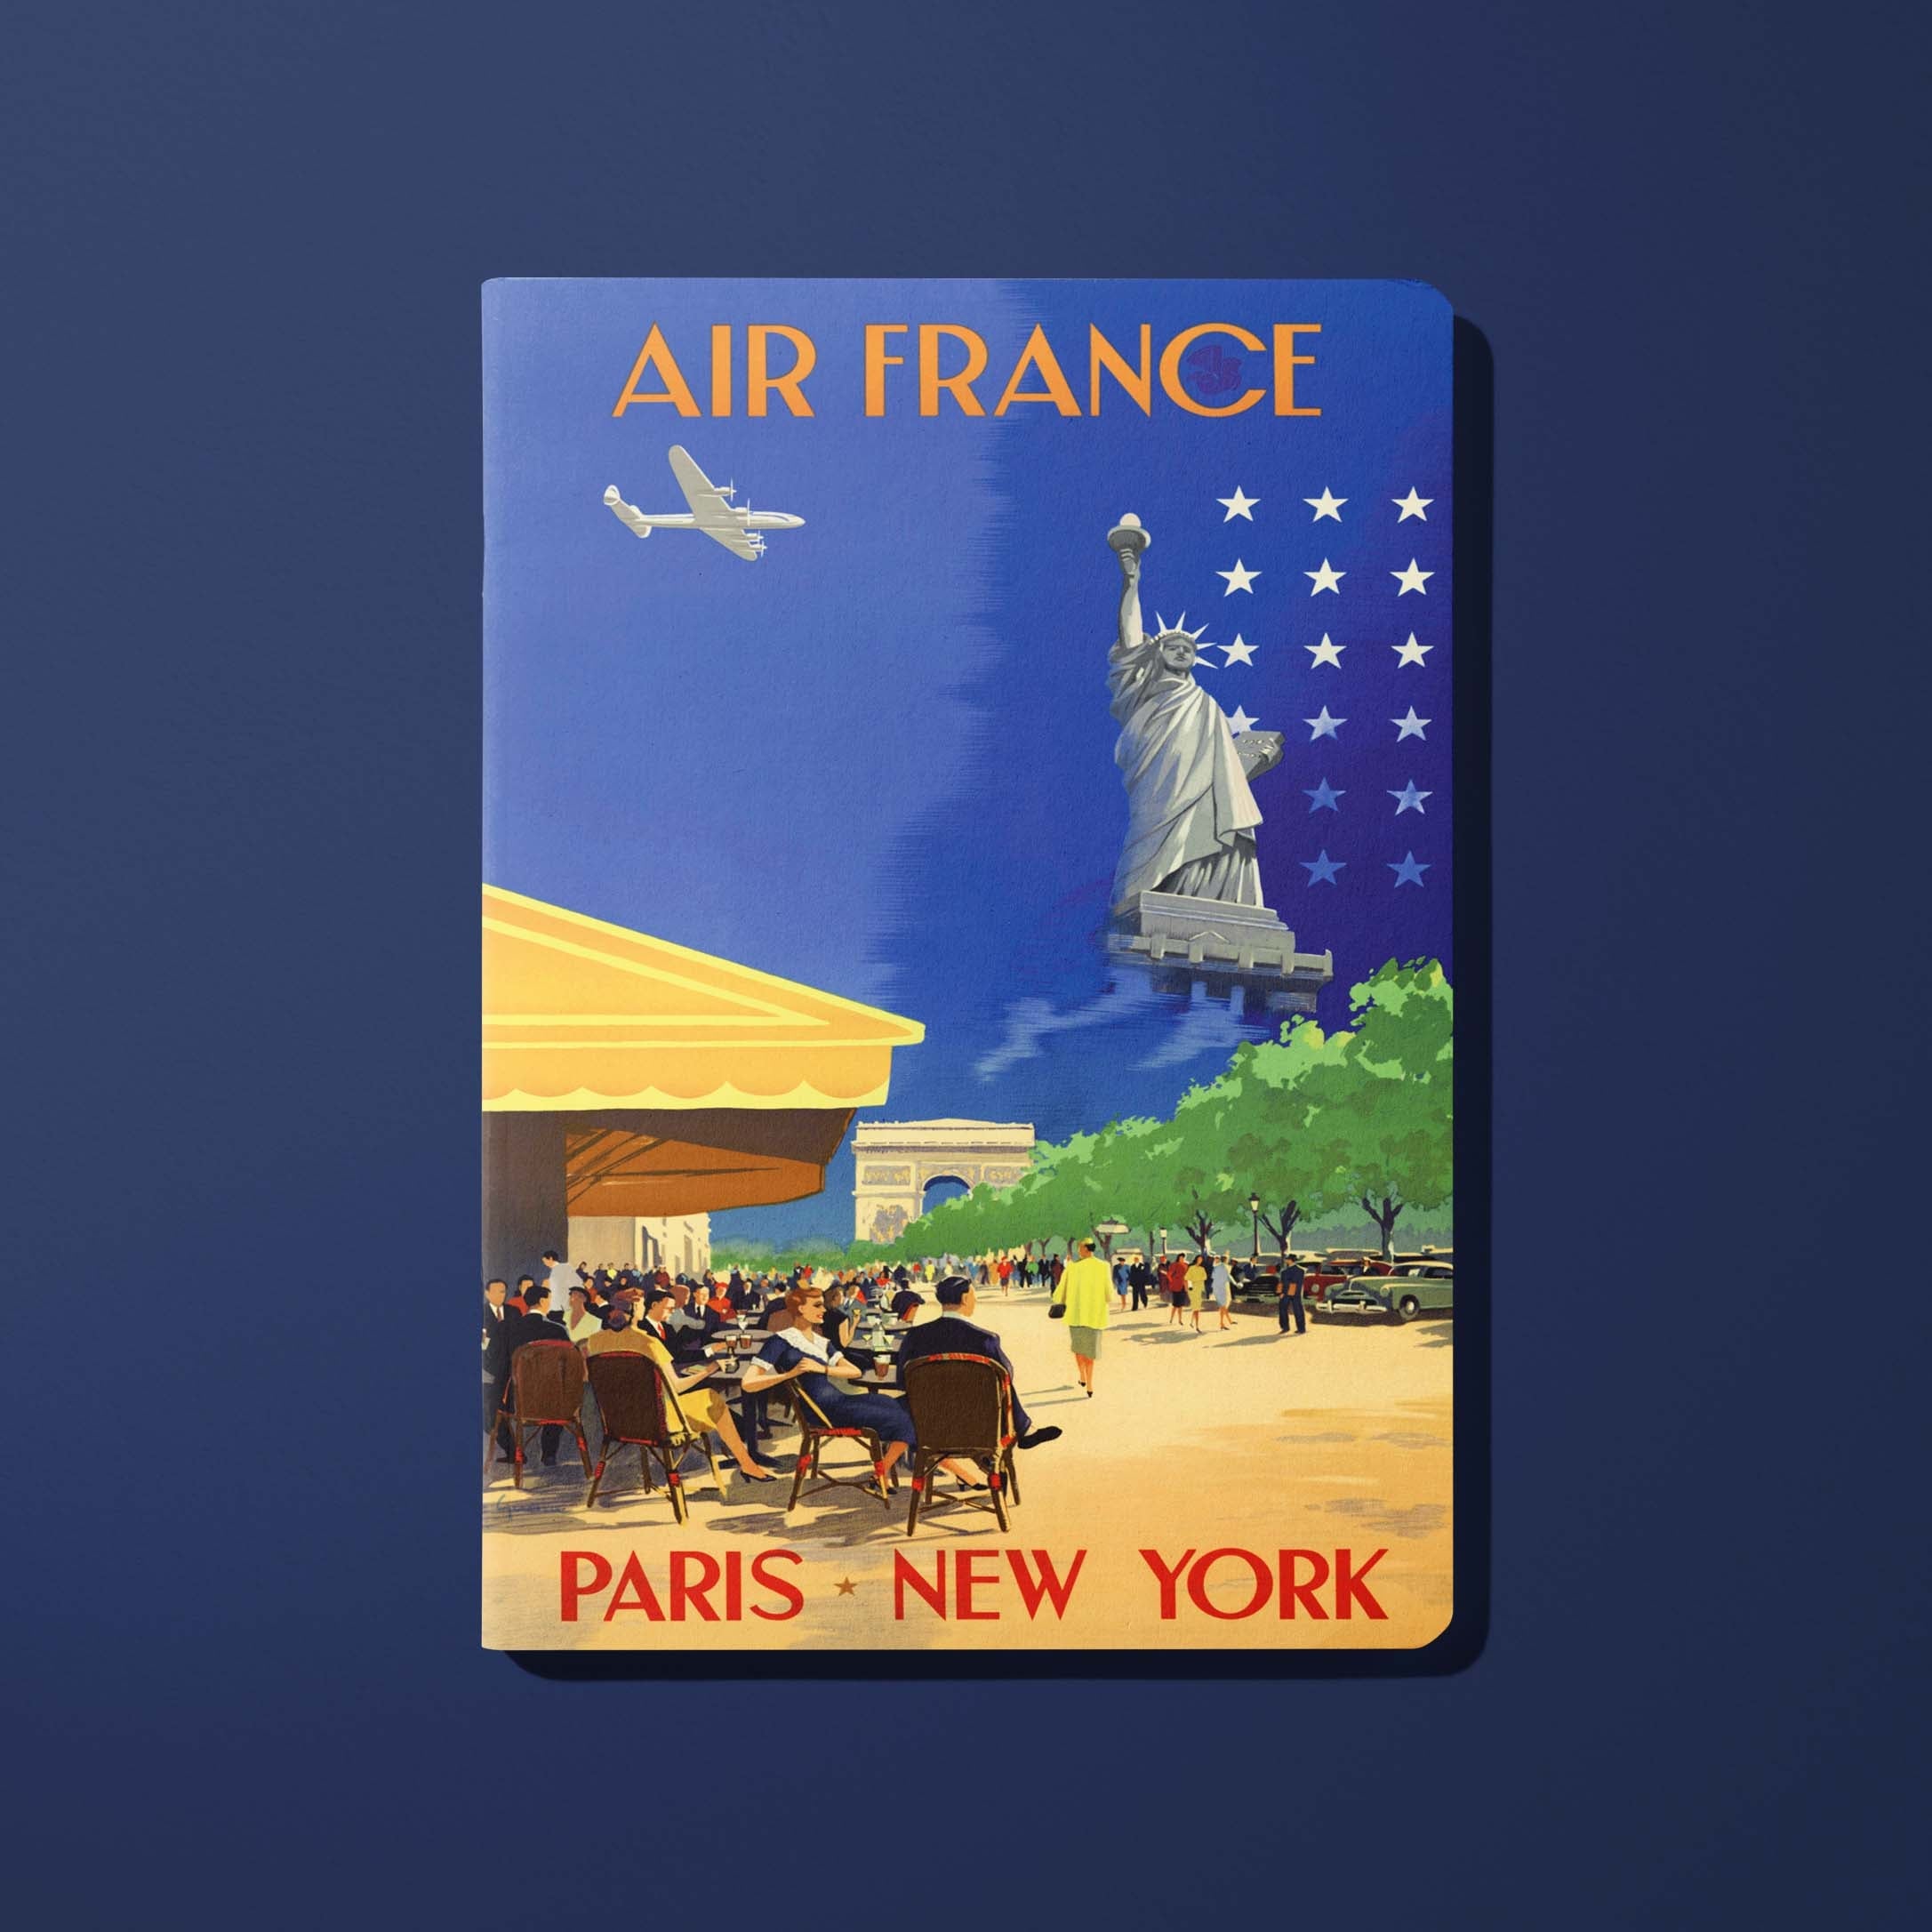 Air France Legend Paris - New York, Champs Elysées booklet